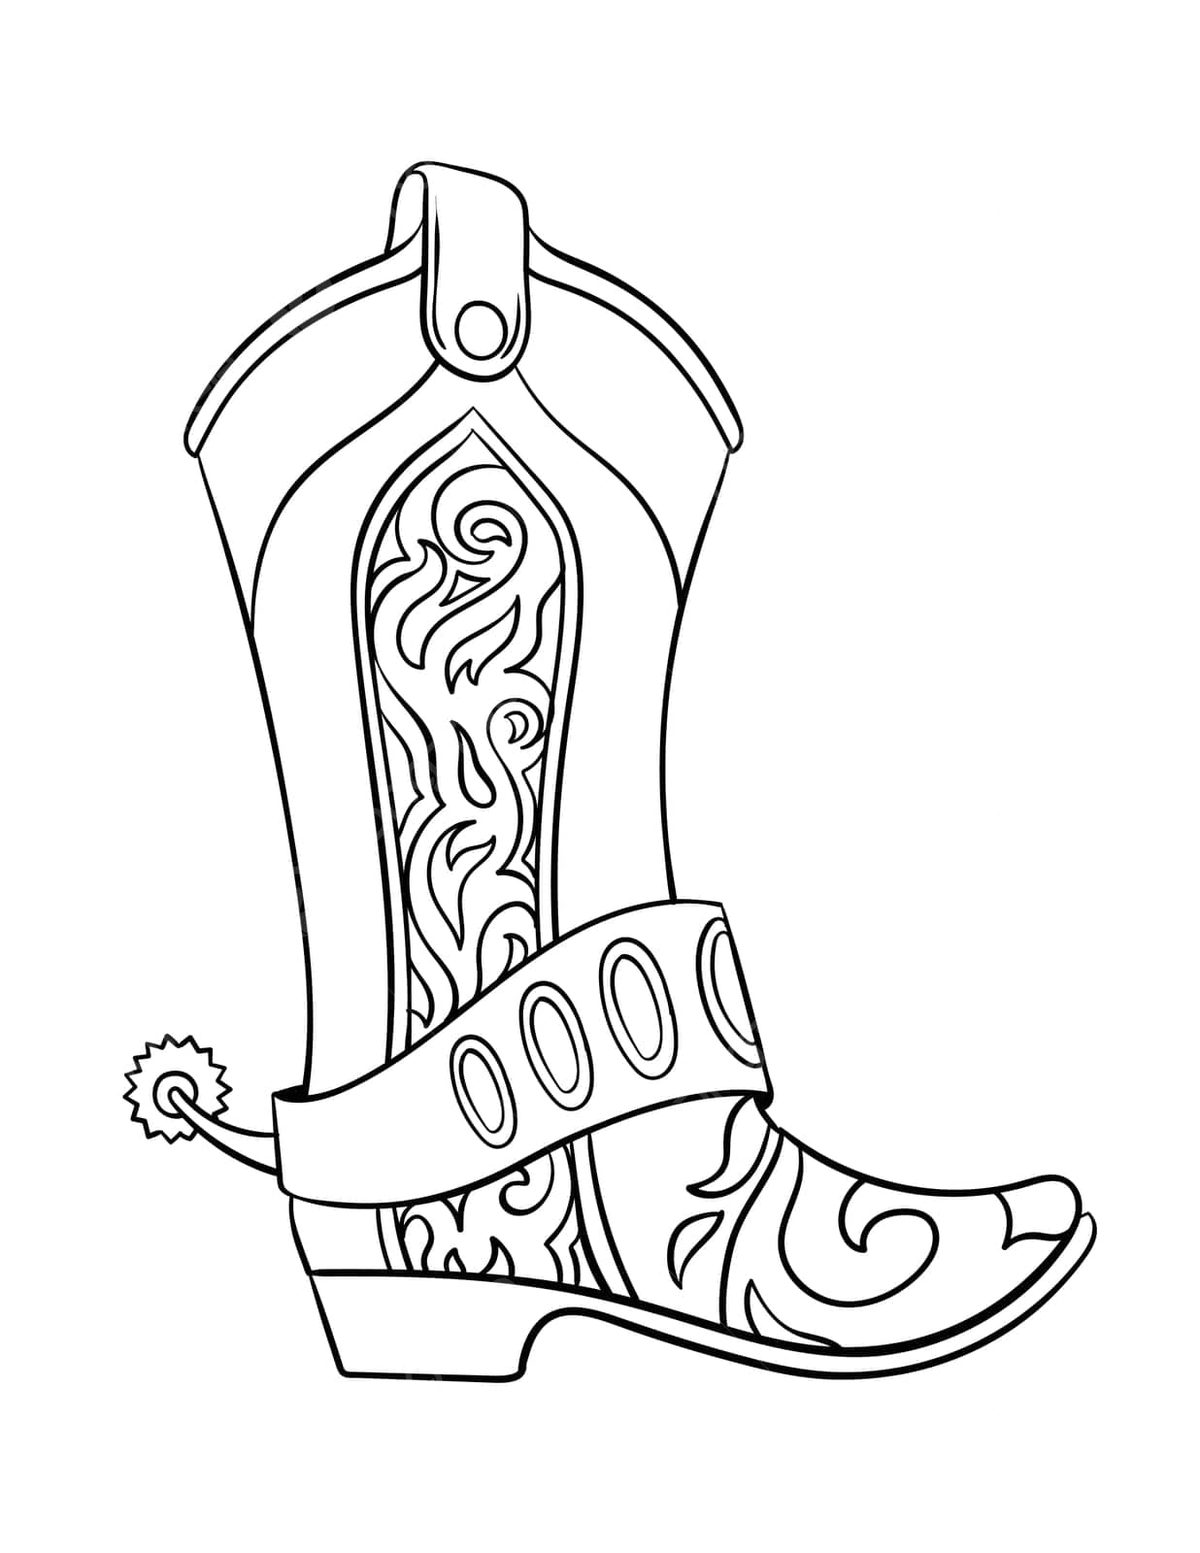 Dibujo de botas vaqueras pãgina para colorear aislada niãos diseão lãnea vector png dibujos dibujo de vaca dibujo de vaquero dibujo de anillo png y vector para dcargar gratis